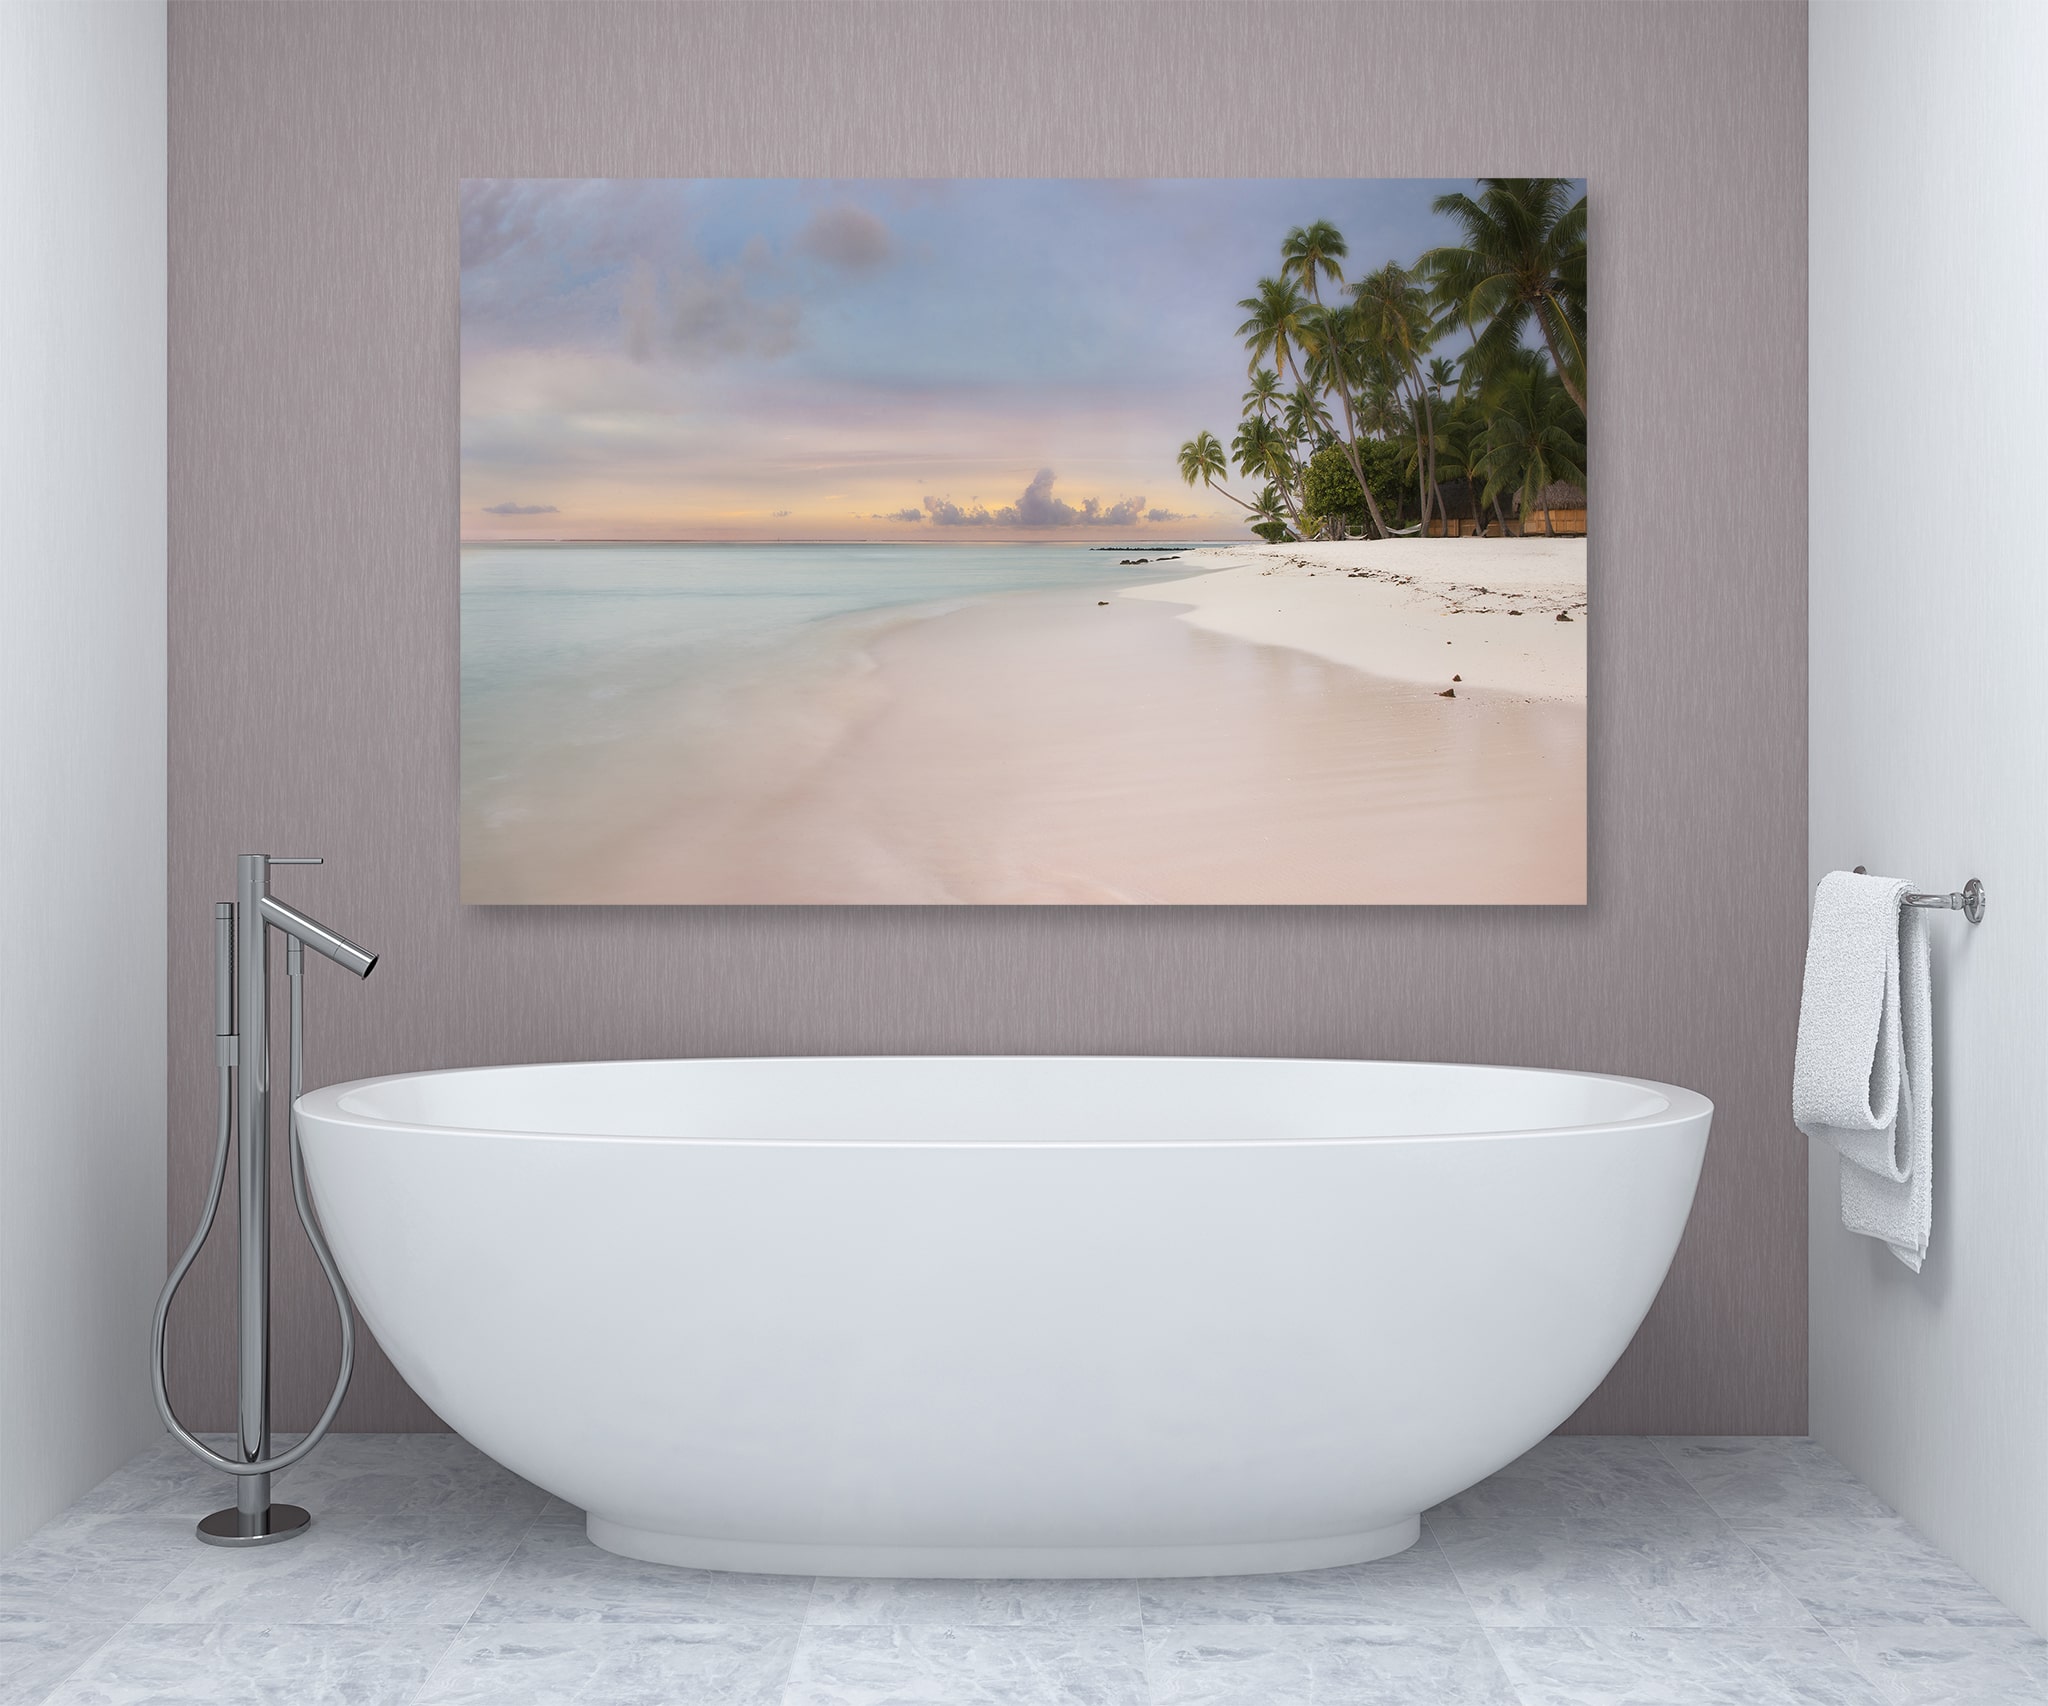 Bathroom Art - Tropical Beach Over Tub